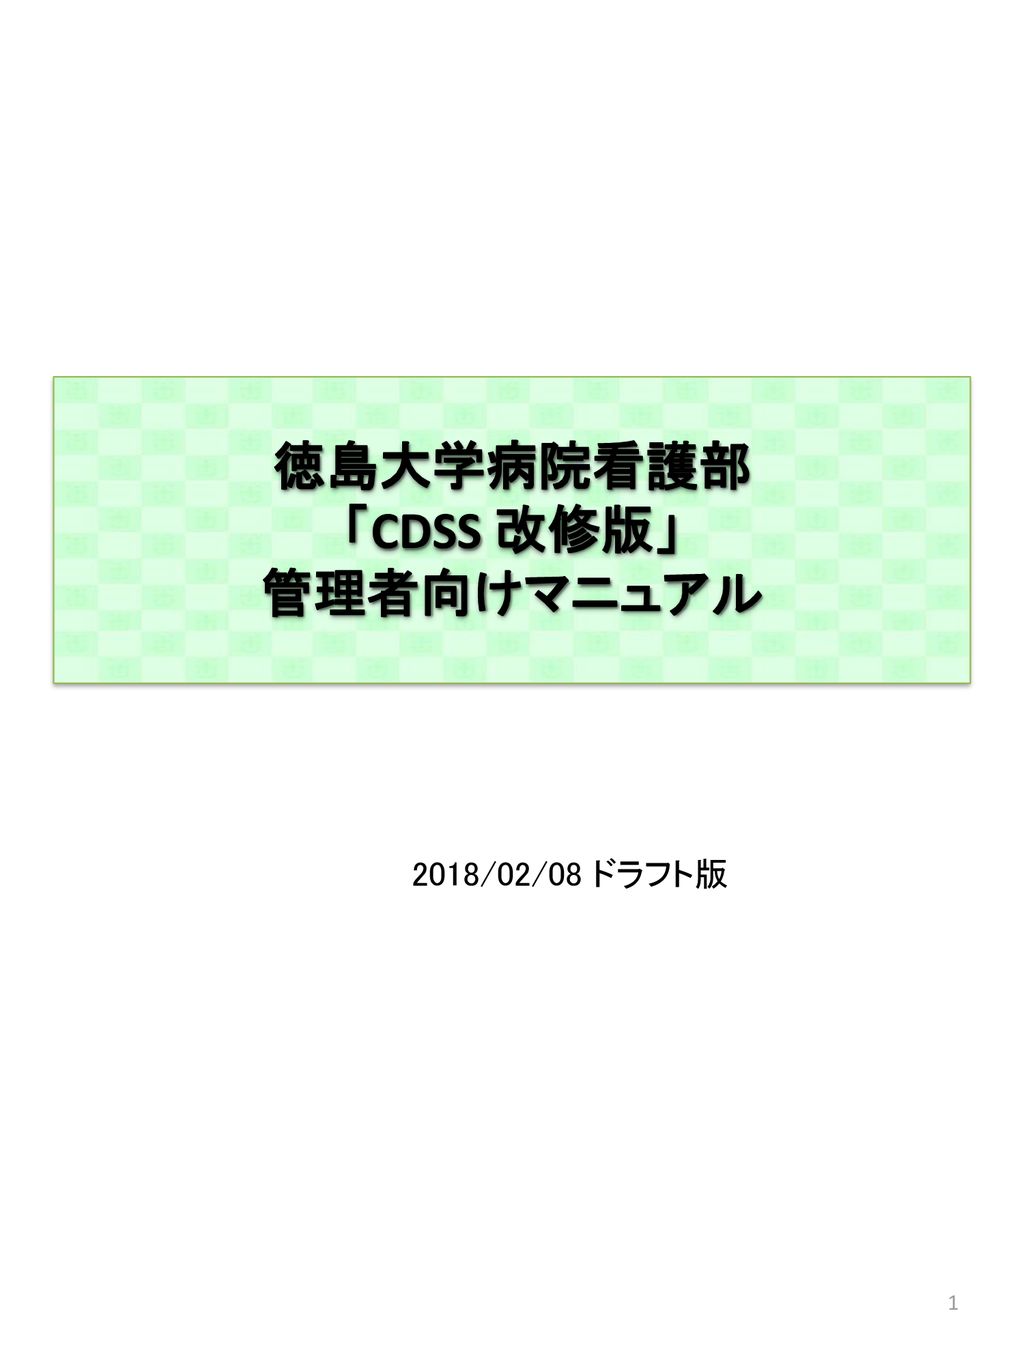 徳島大学病院看護部 Cdss 改修版 管理者向けマニュアル Ppt Download